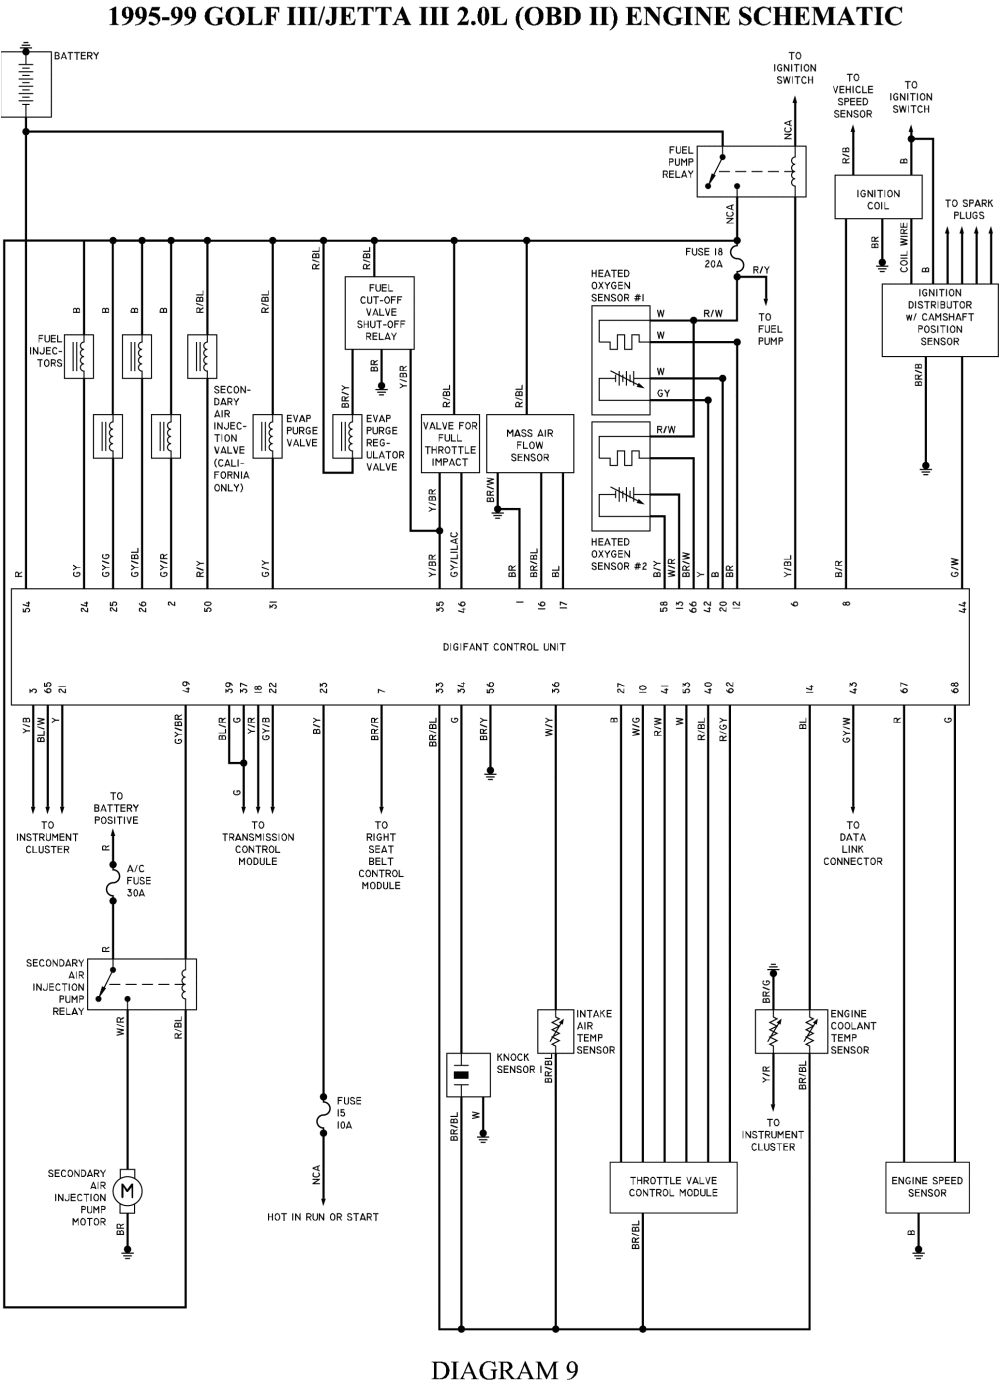 1994 jetta wiring diagram wiring diagram standard 1994 volkswagen jetta wiring diagram solenoid